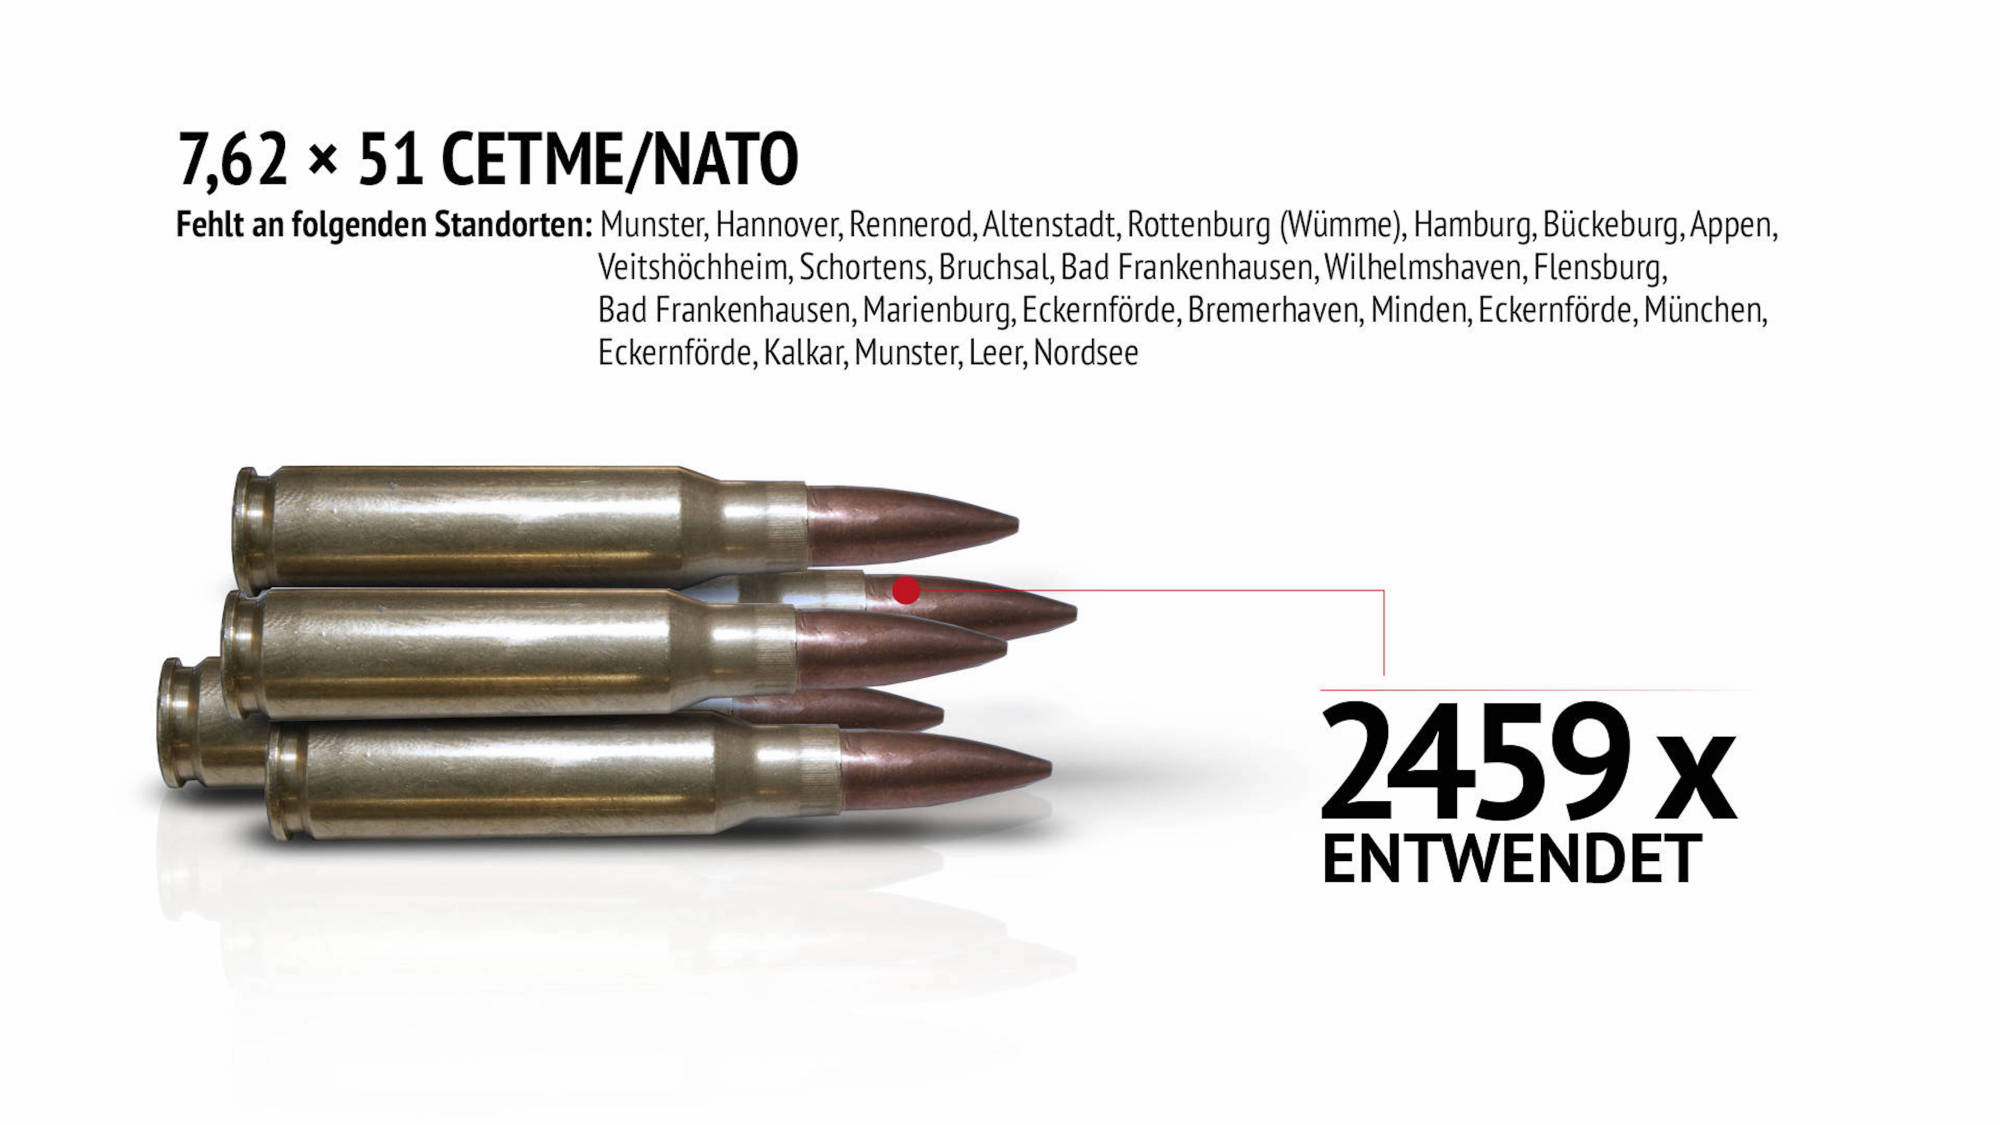 Verschwundene Waffen: 7,62x51 CETME/Nato Munition.